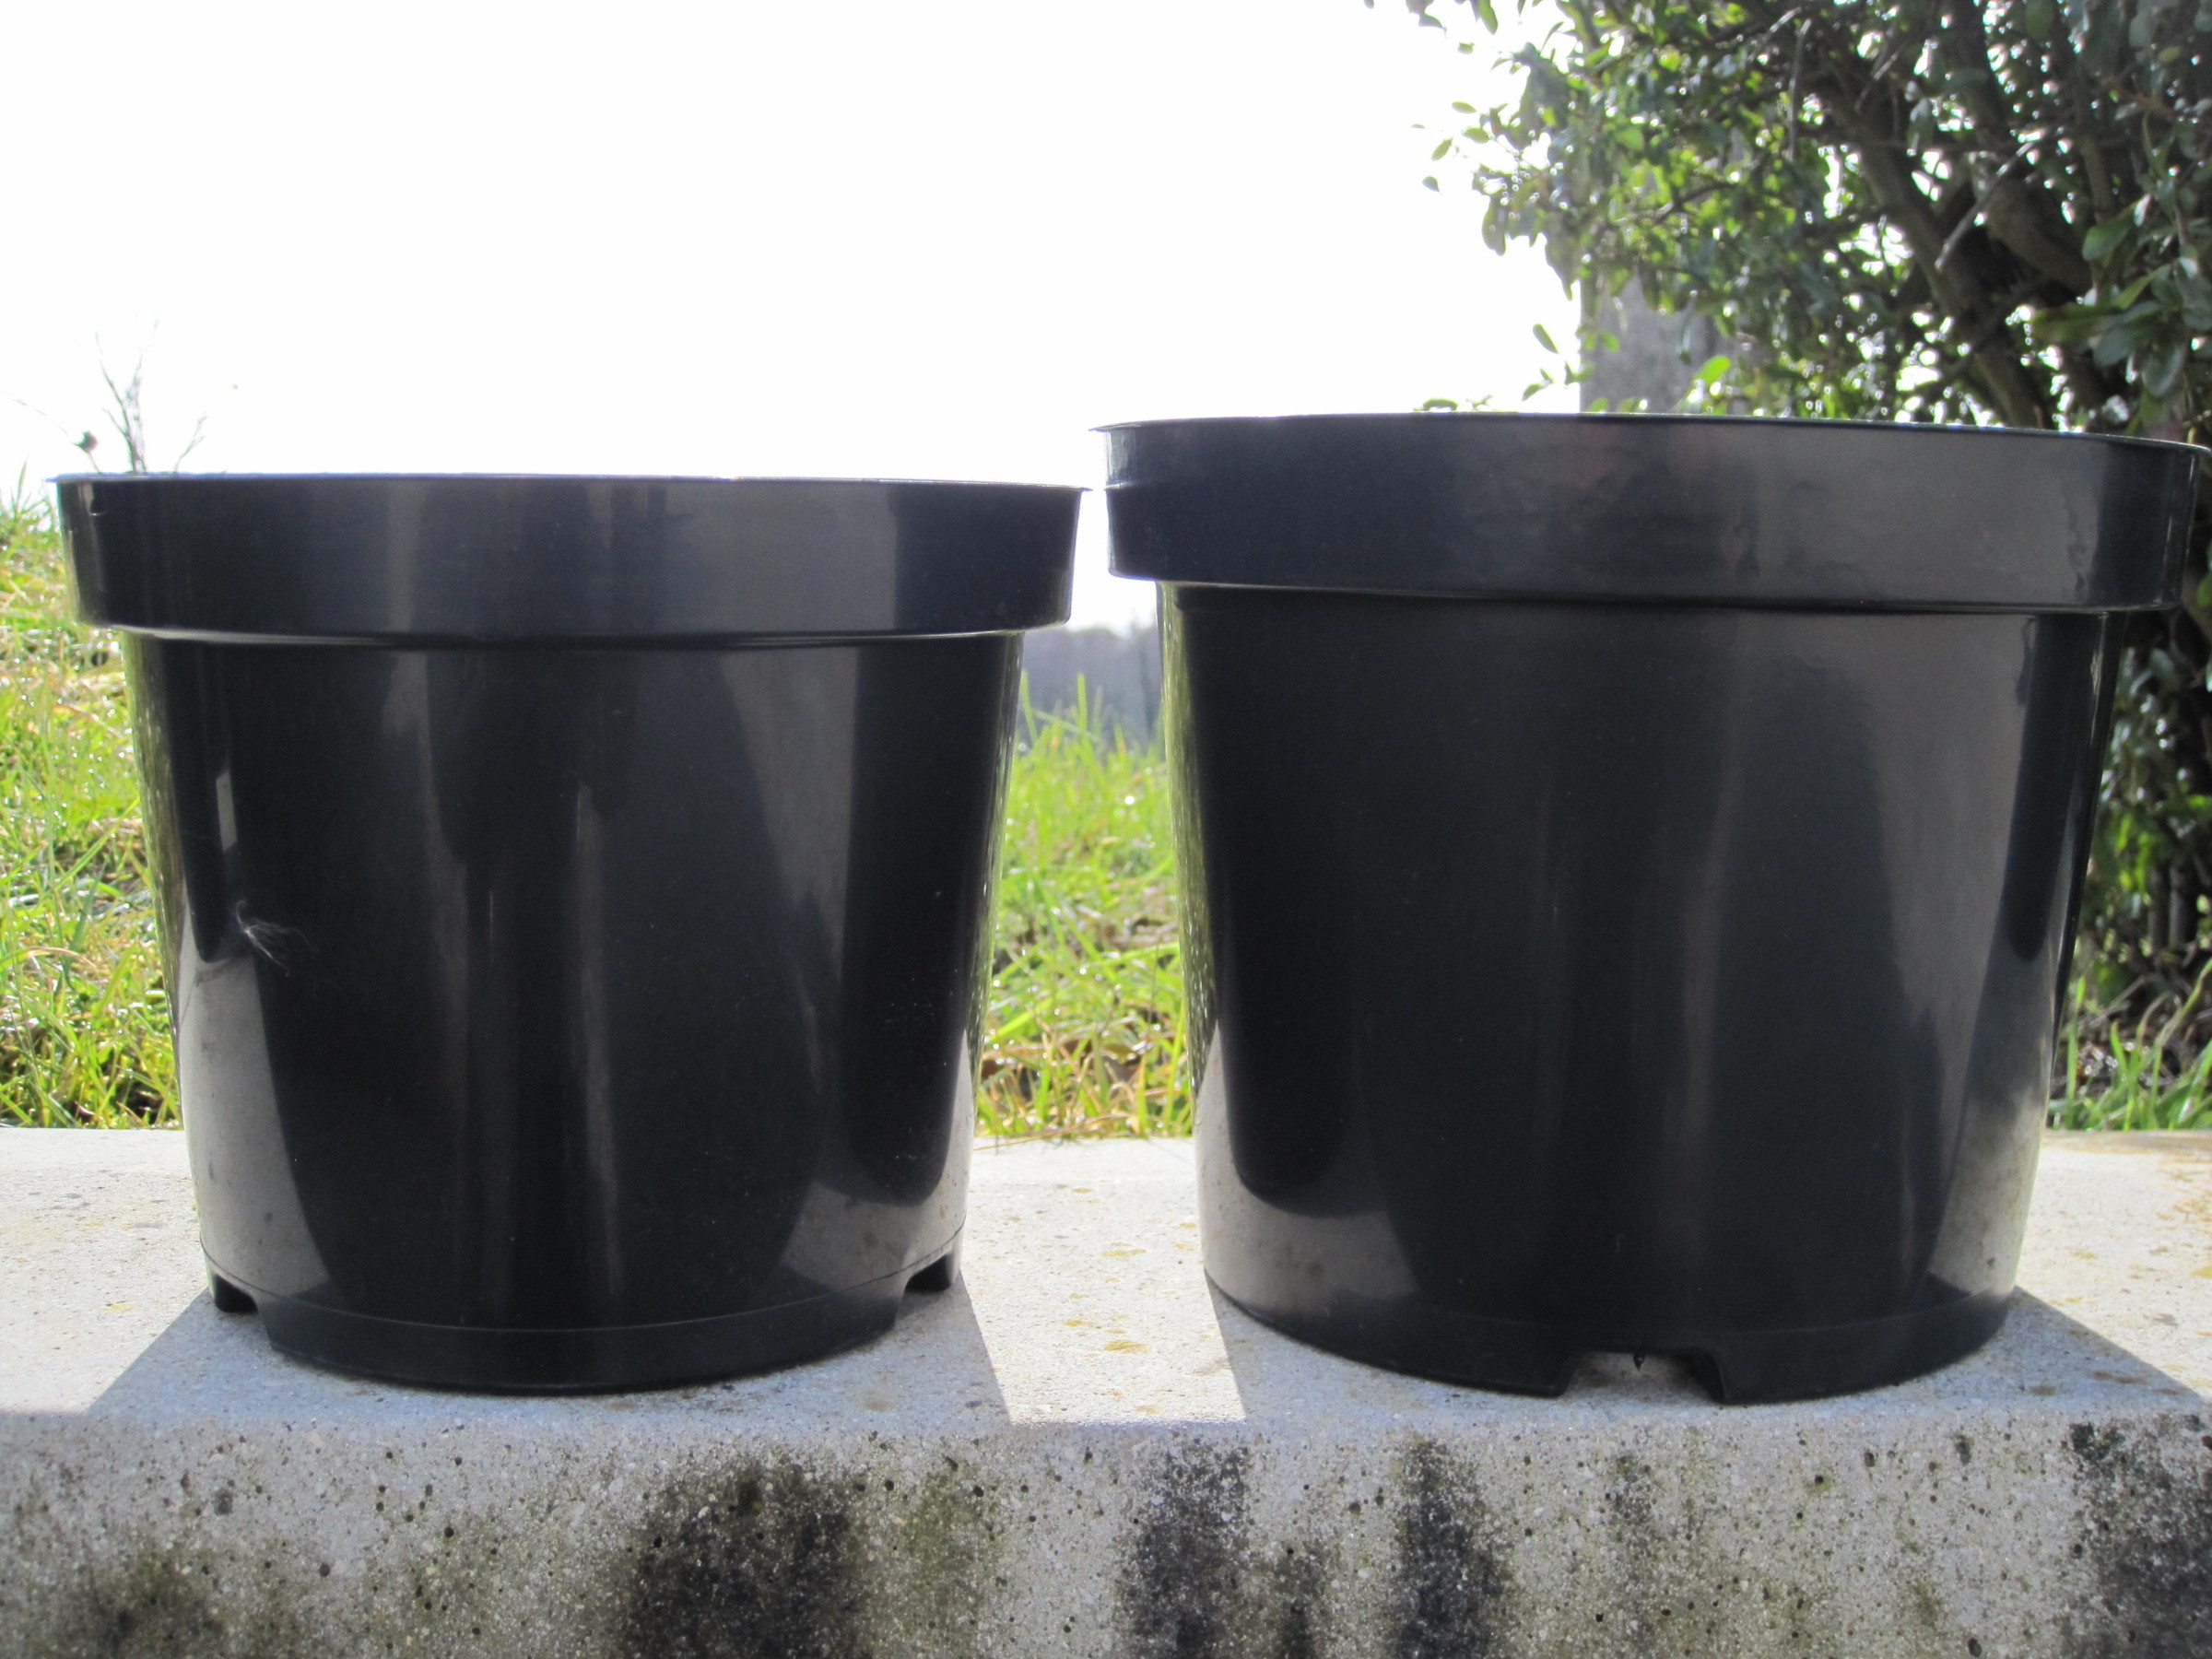 Acheter 20 pièces Pot de fleur en plastique plante pépinière Pot